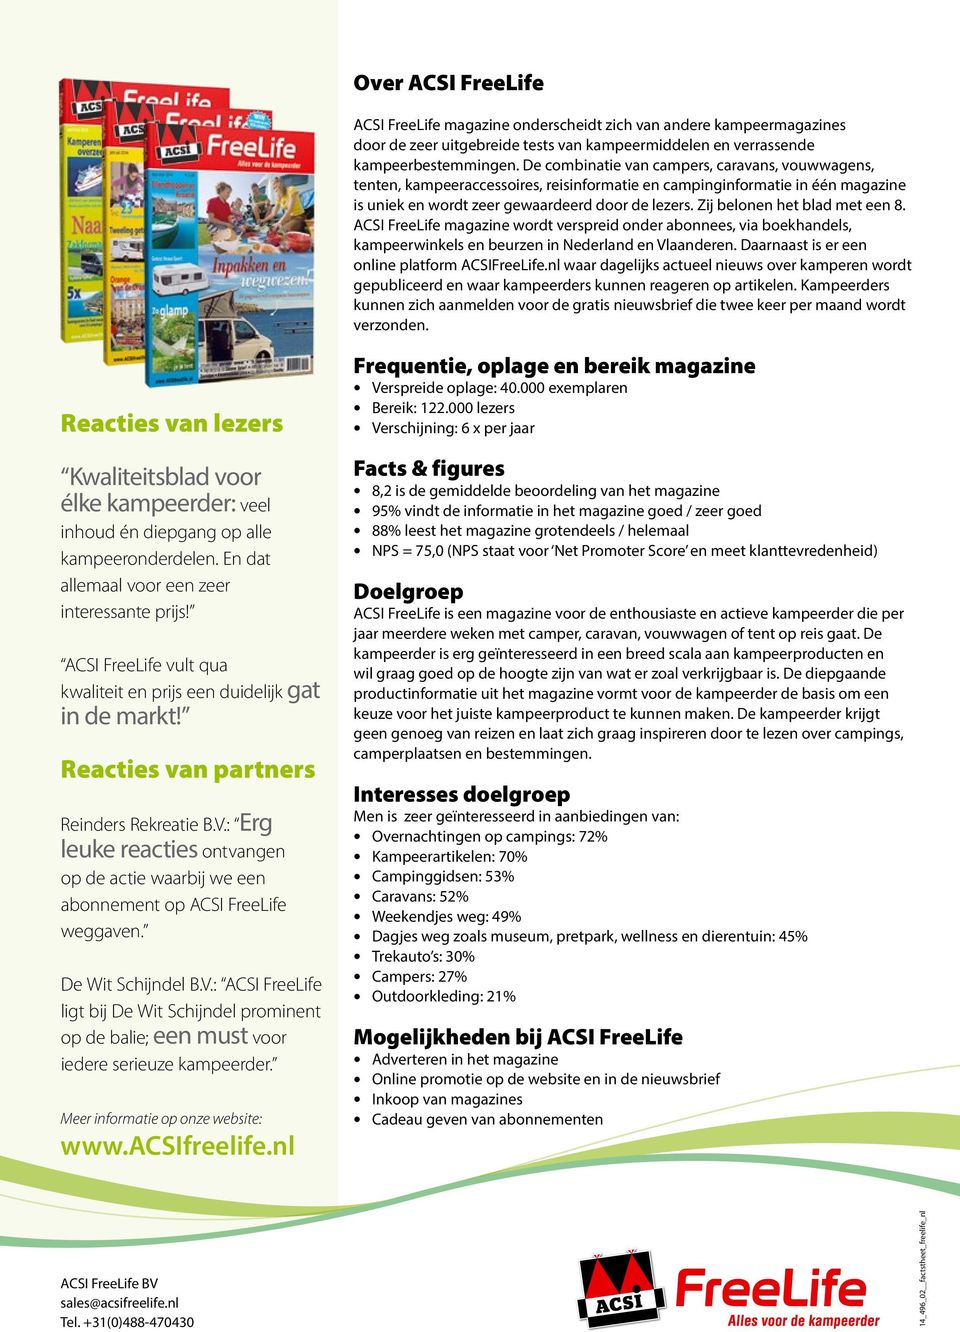 Zij belonen het blad met een 8. ACSI FreeLife magazine wordt verspreid onder abonnees, via boekhandels, kampeerwinkels en beurzen in Nederland en Vlaanderen.